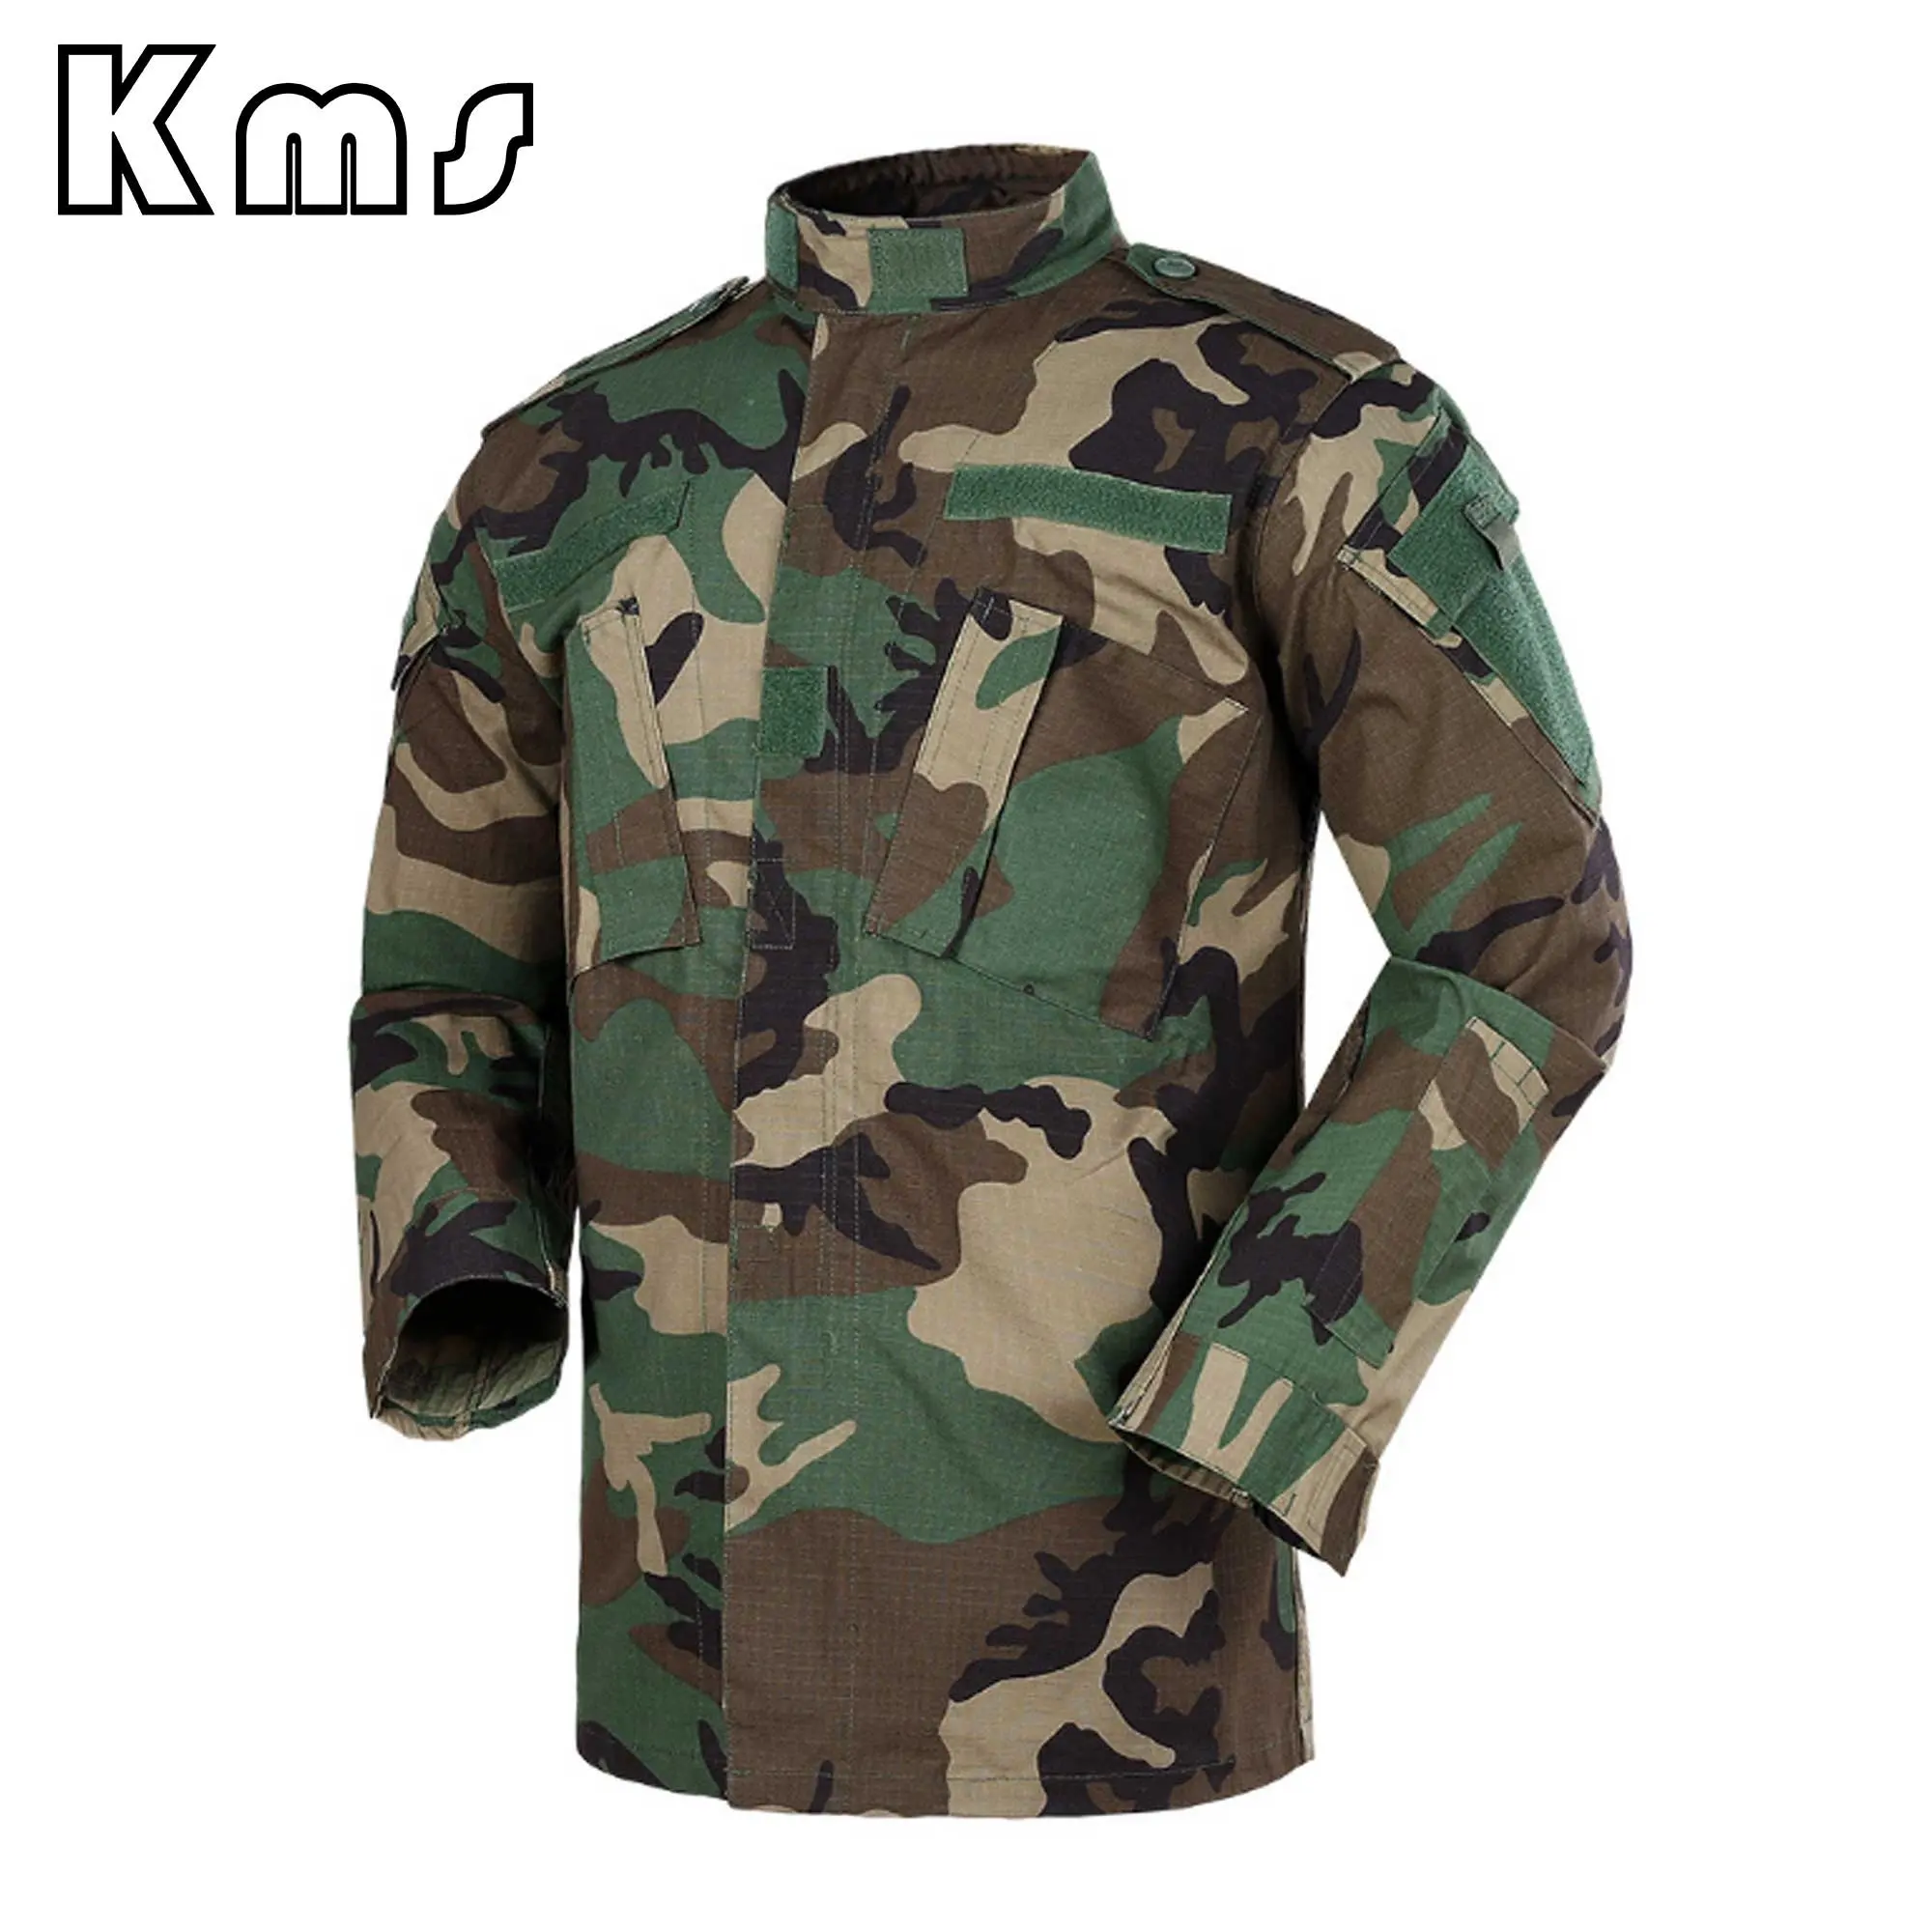 Камуфляжная камуфляжная униформа для лесных массивов, индивидуальный комплект церемониальной униформы полевой тактической униформы джунглей